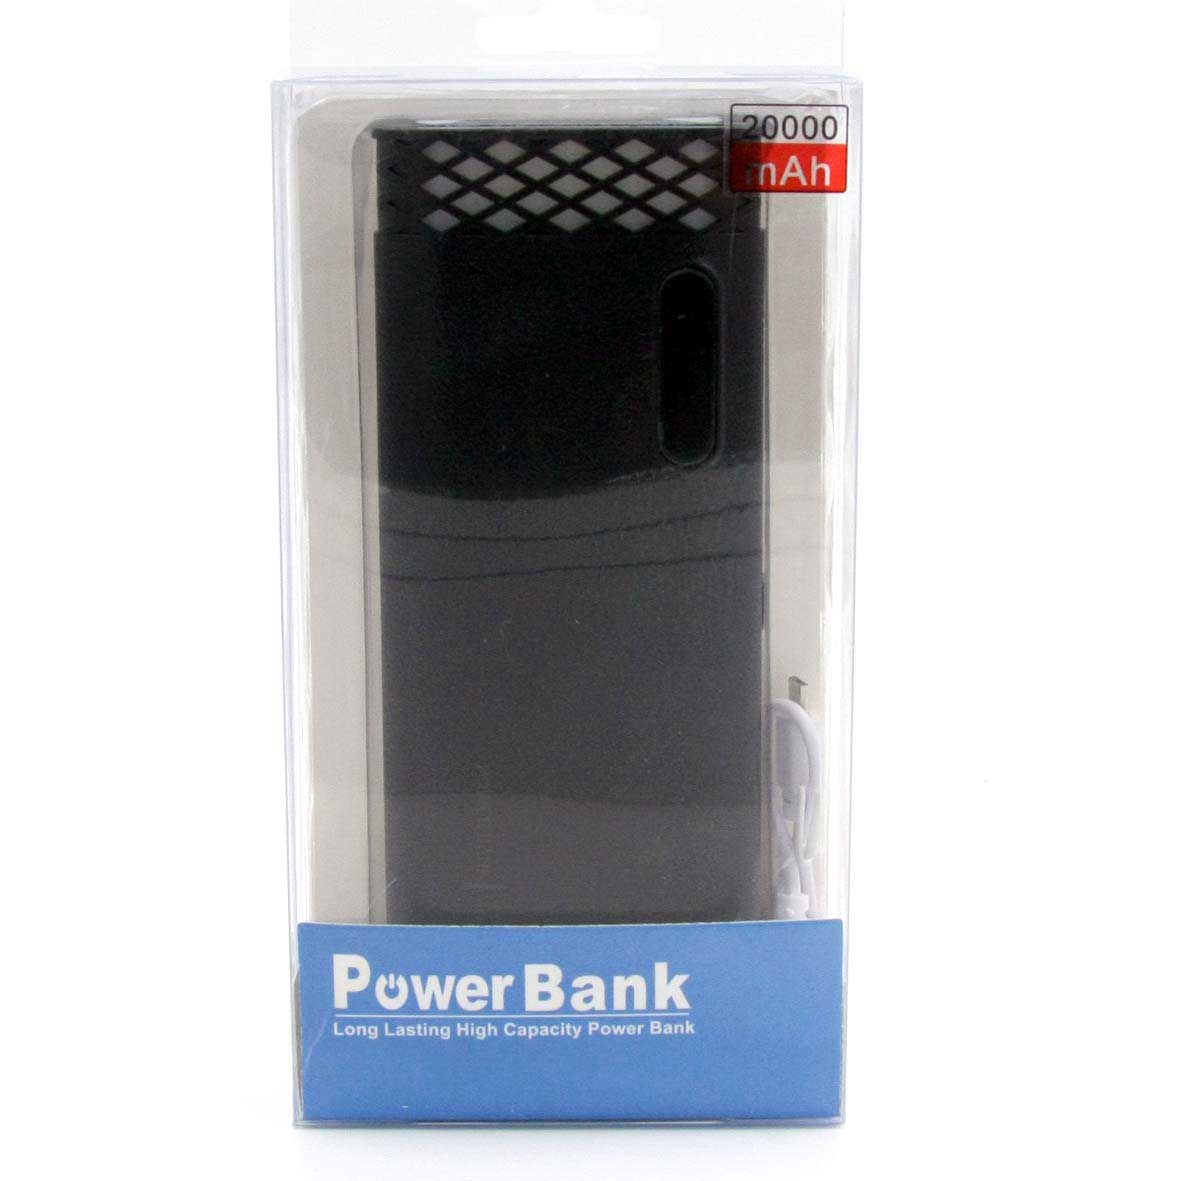 Potente Cargador portátil Power Bank 20.000 Mah para recargar cualquier dispositivo electrónico, tiene doble entrada USB y linterna